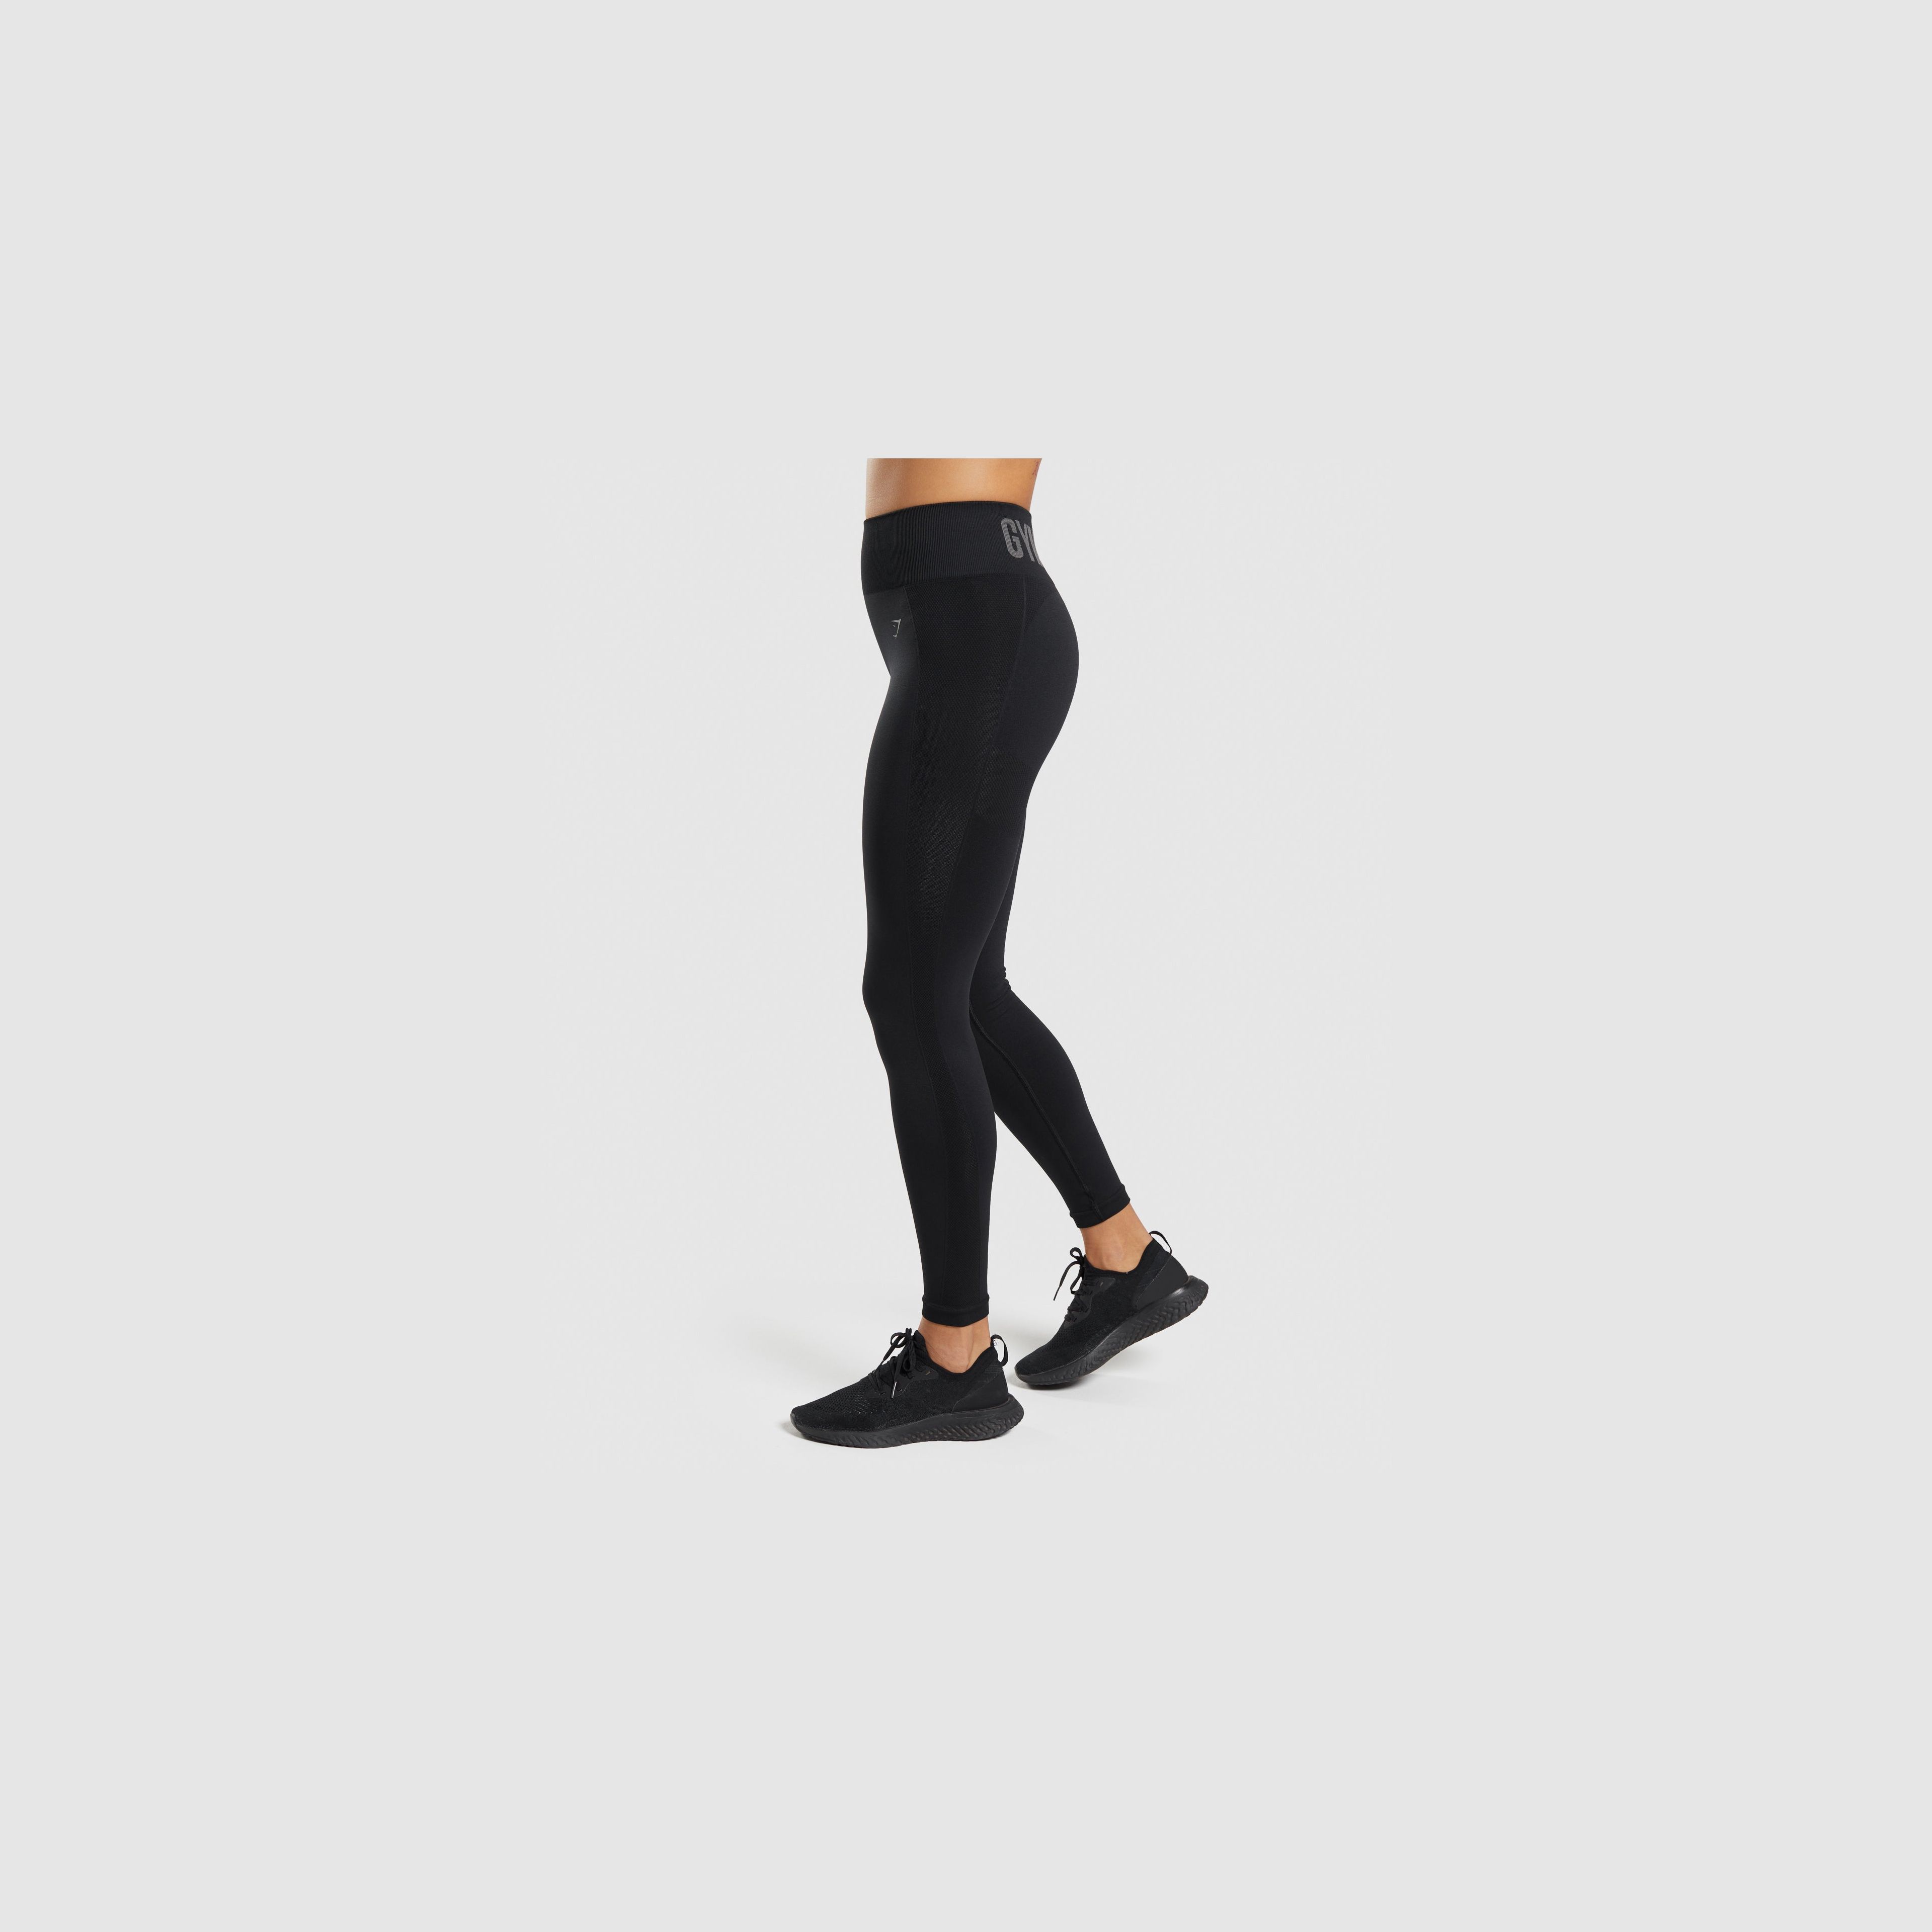 Gymshark Flex High Waisted Leggings - Black/Charcoal | Gymshark | High  waisted leggings, Black leggings, Gym leggings women